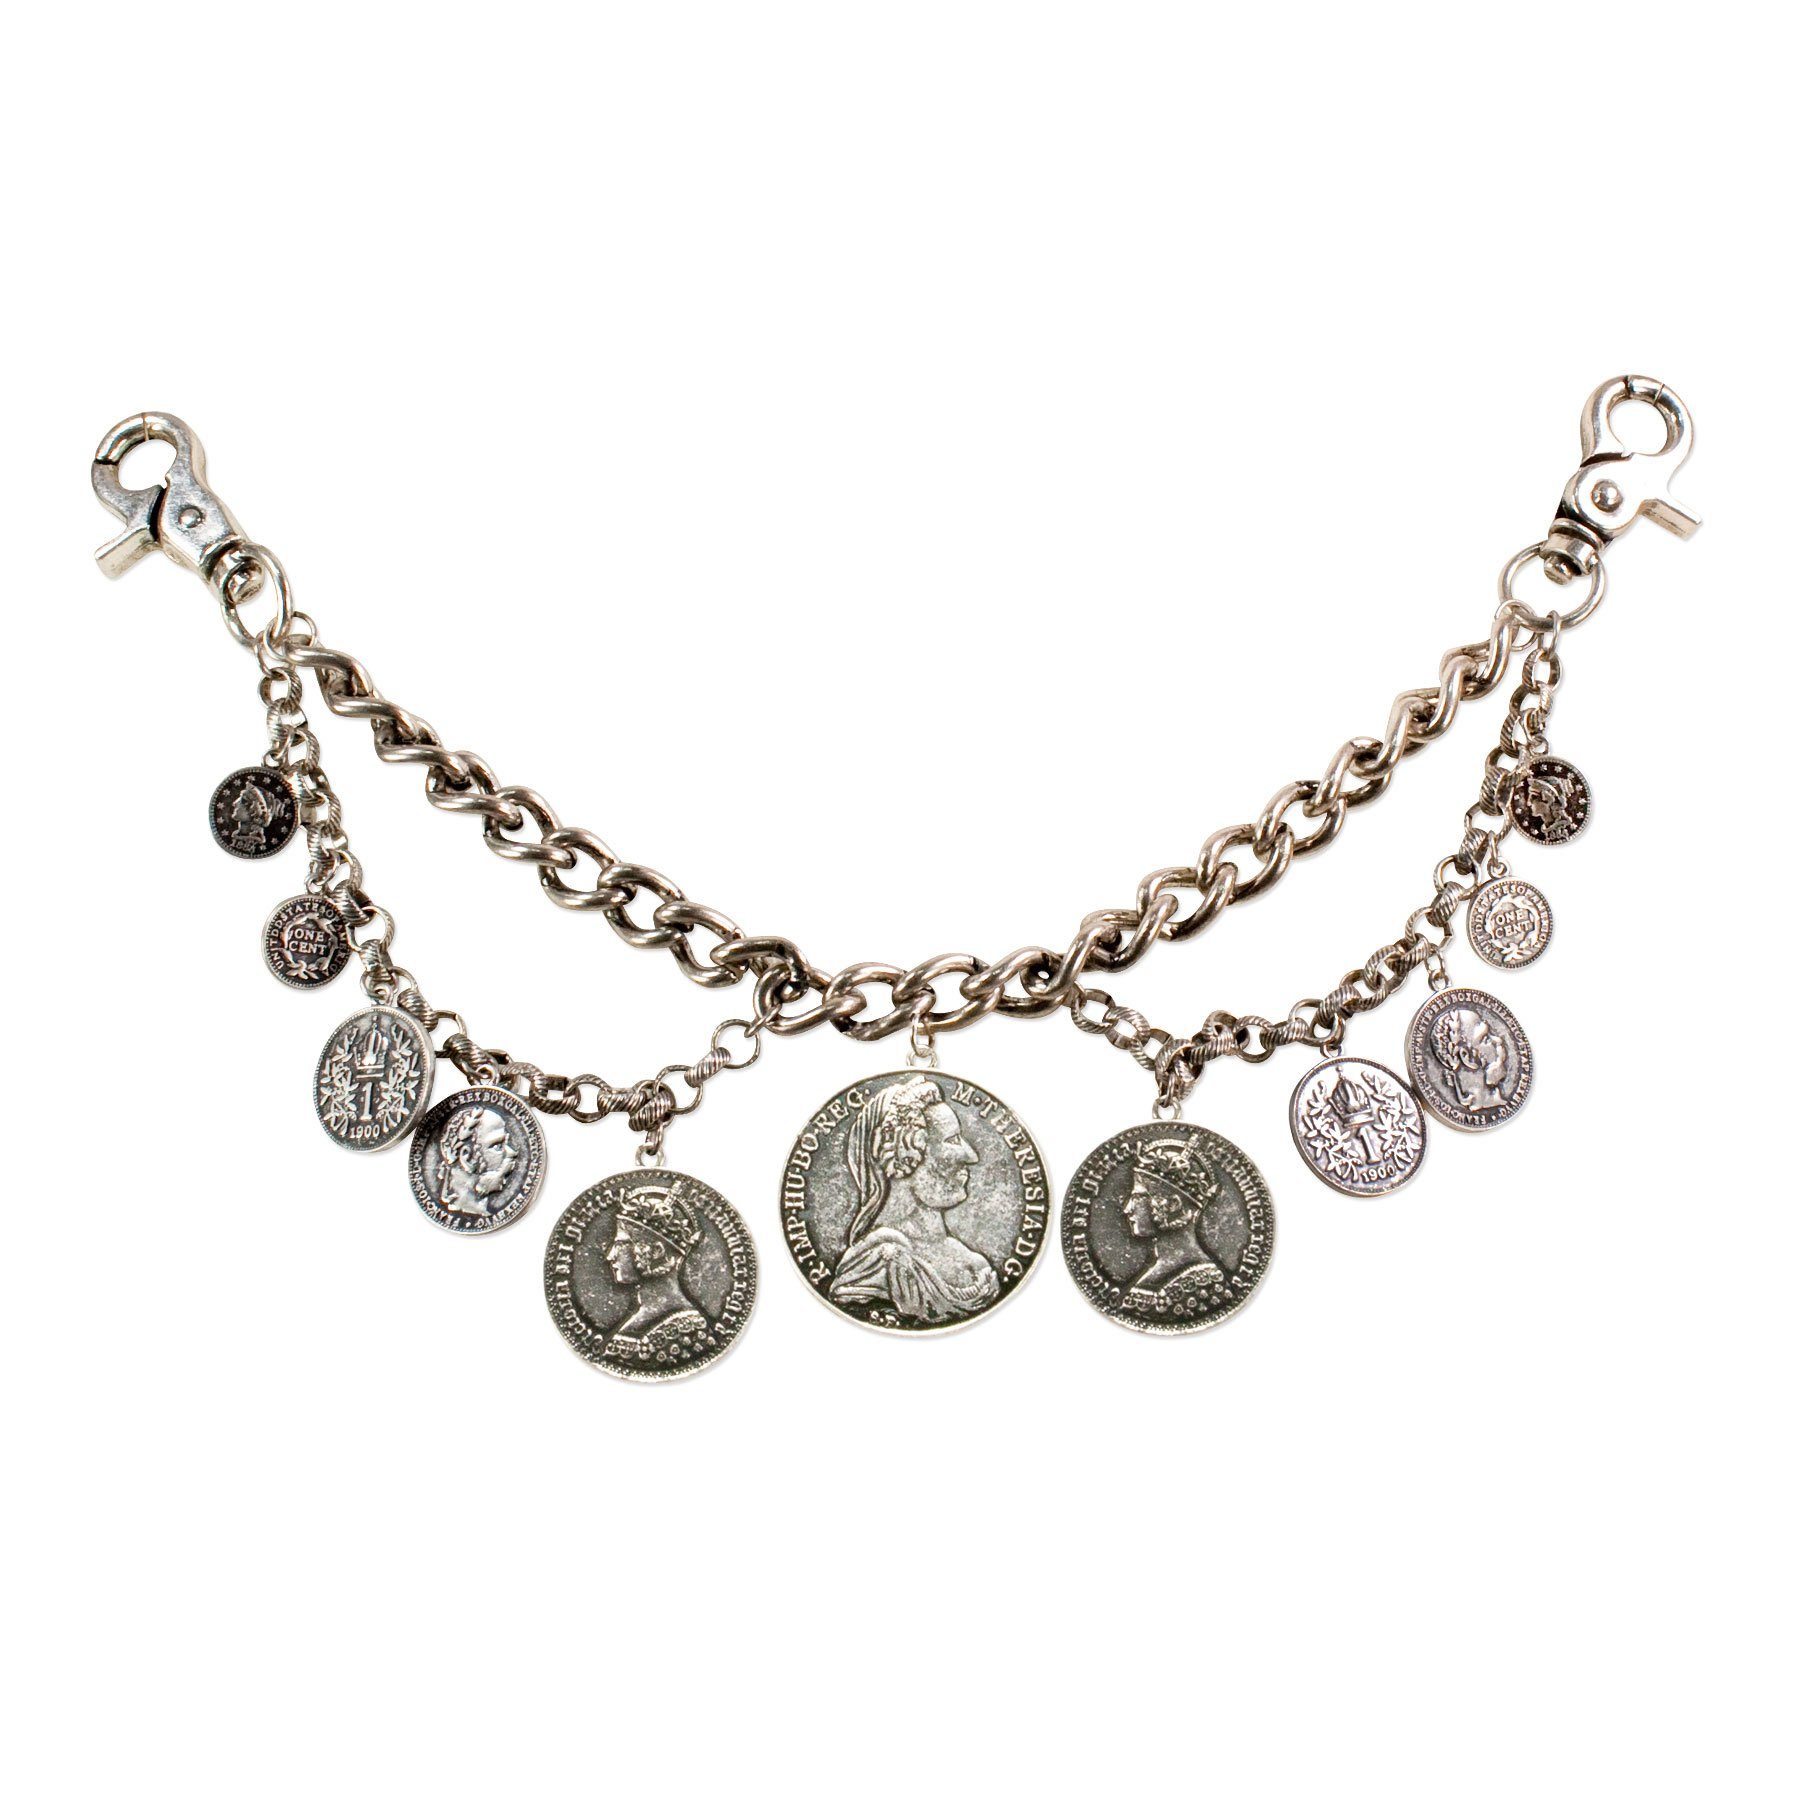 Alpenflüstern Kette mit Anhänger Trachten-Charivari Münzen mit für Münz-Anhängern Lederhose Hochwertiger (antik-silber-farben), Herren-Trachtenschmuck - die